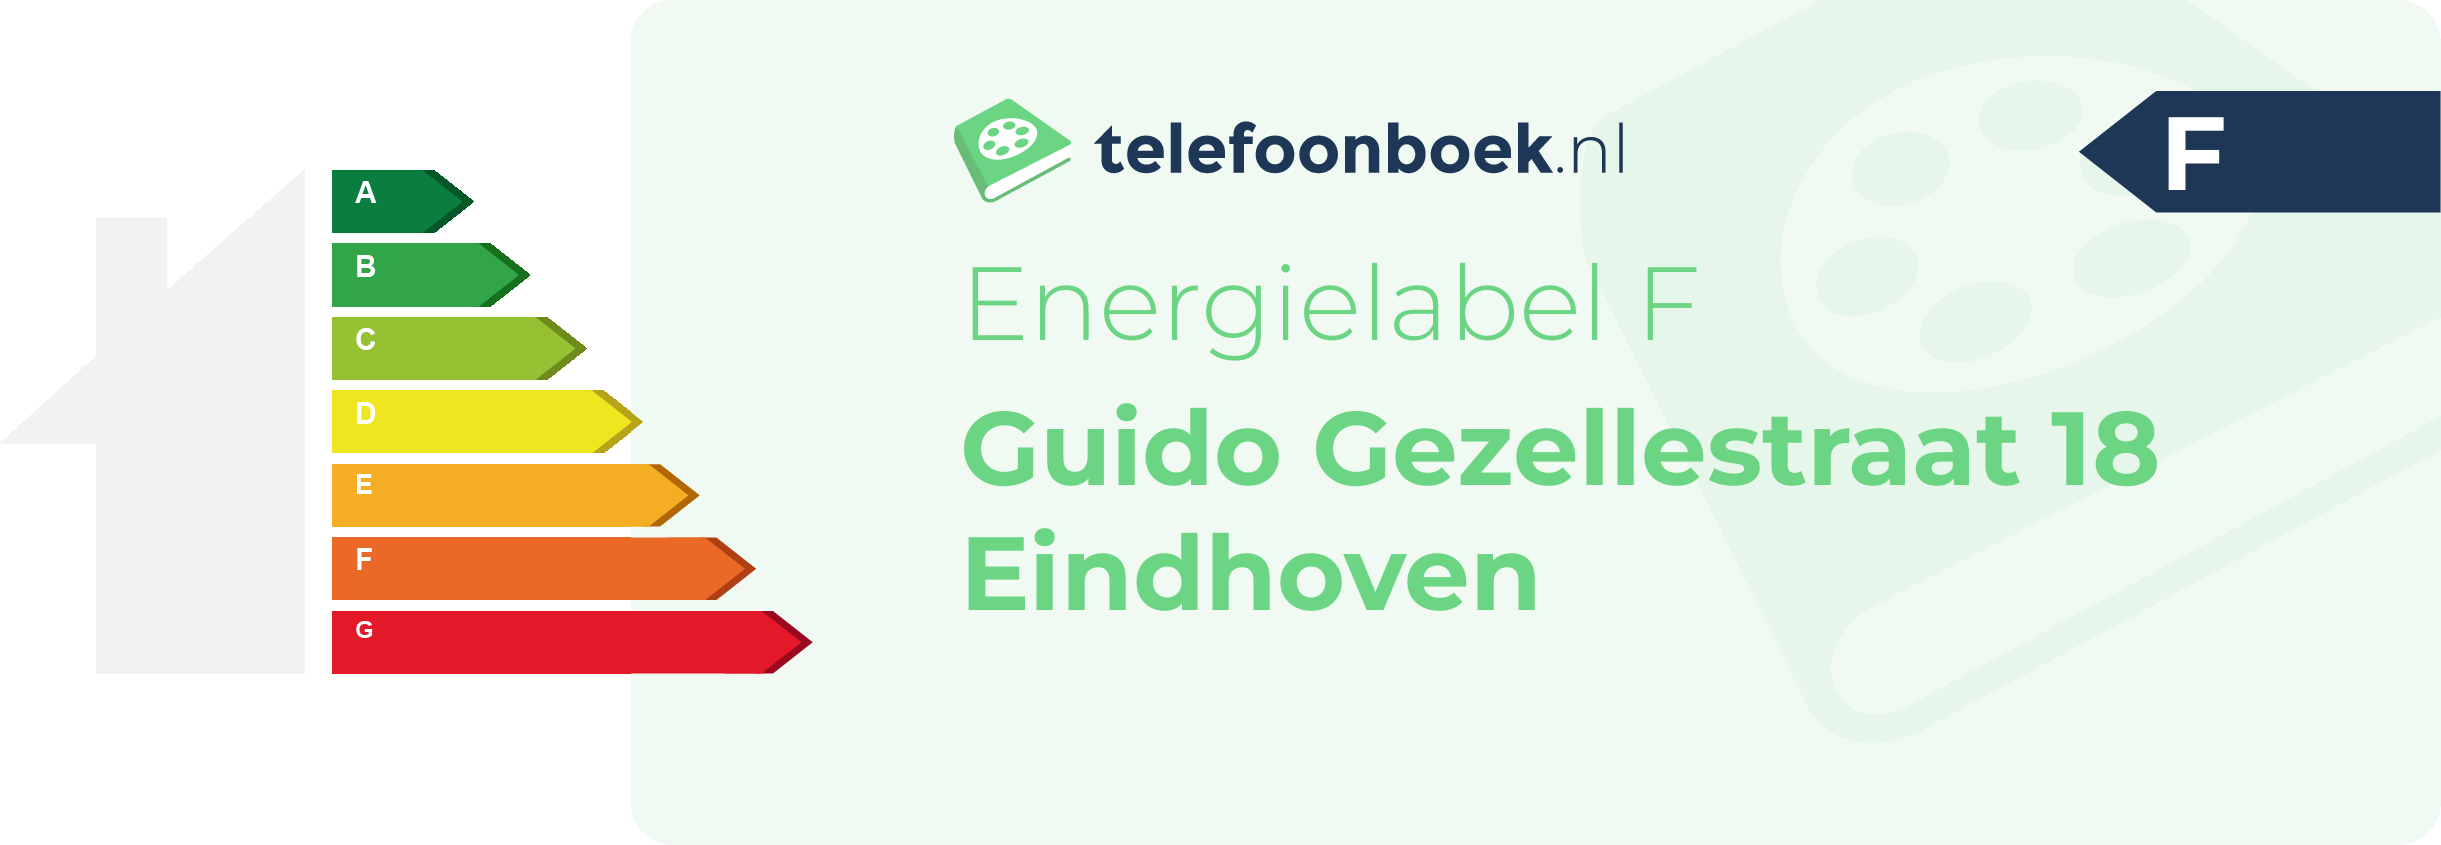 Energielabel Guido Gezellestraat 18 Eindhoven